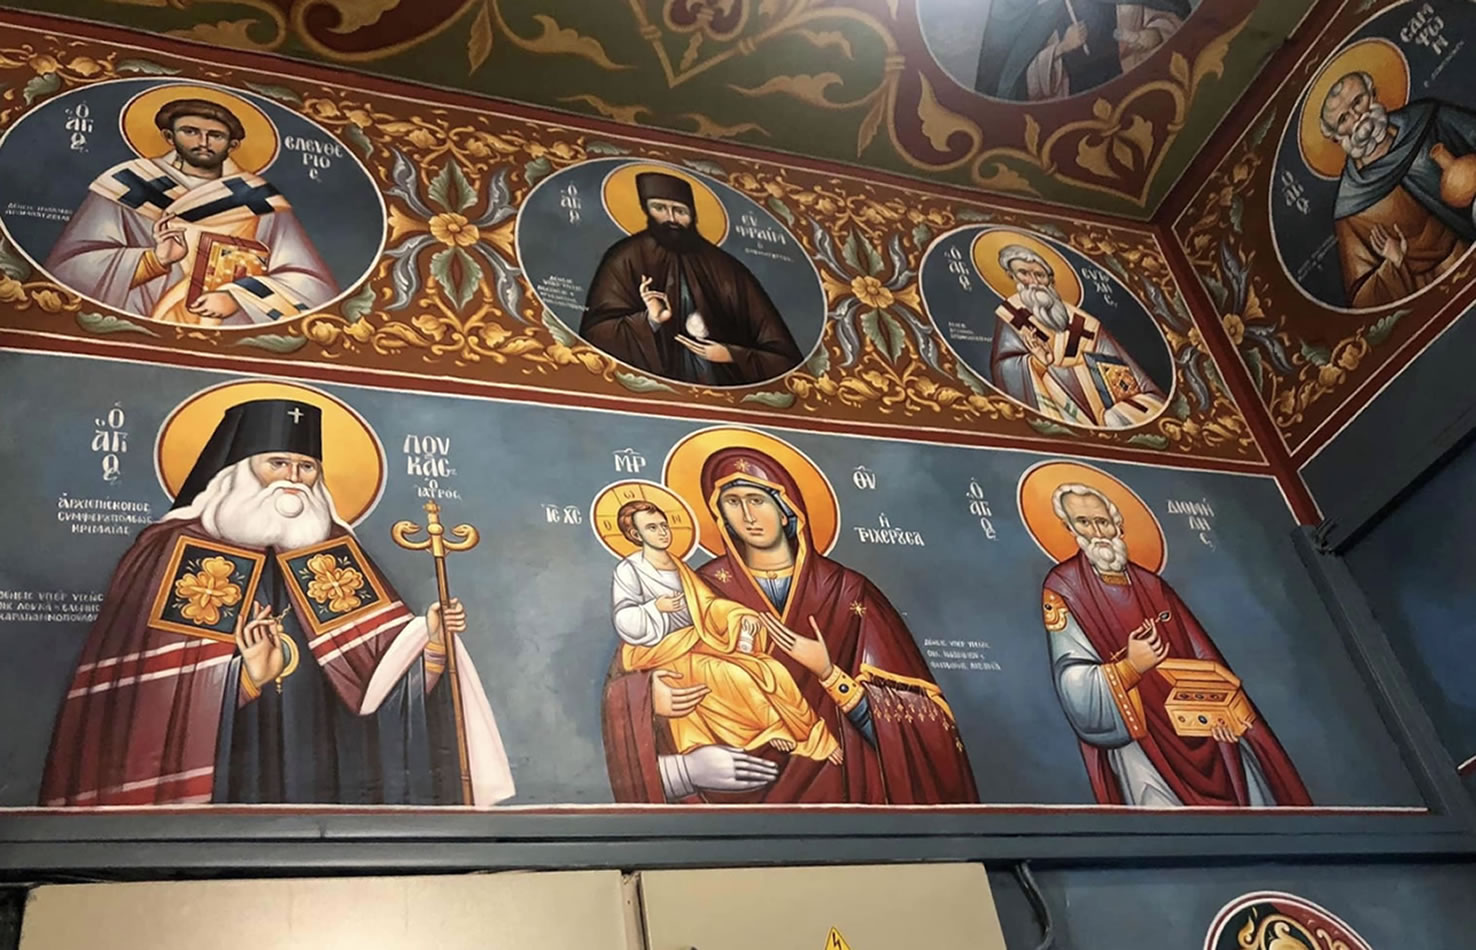 Σπυριδούλα Δεγαΐτη,Αγιογράφος,εργαστήριο  βυζαντινής αγιογραφίας,Degaiti Icons